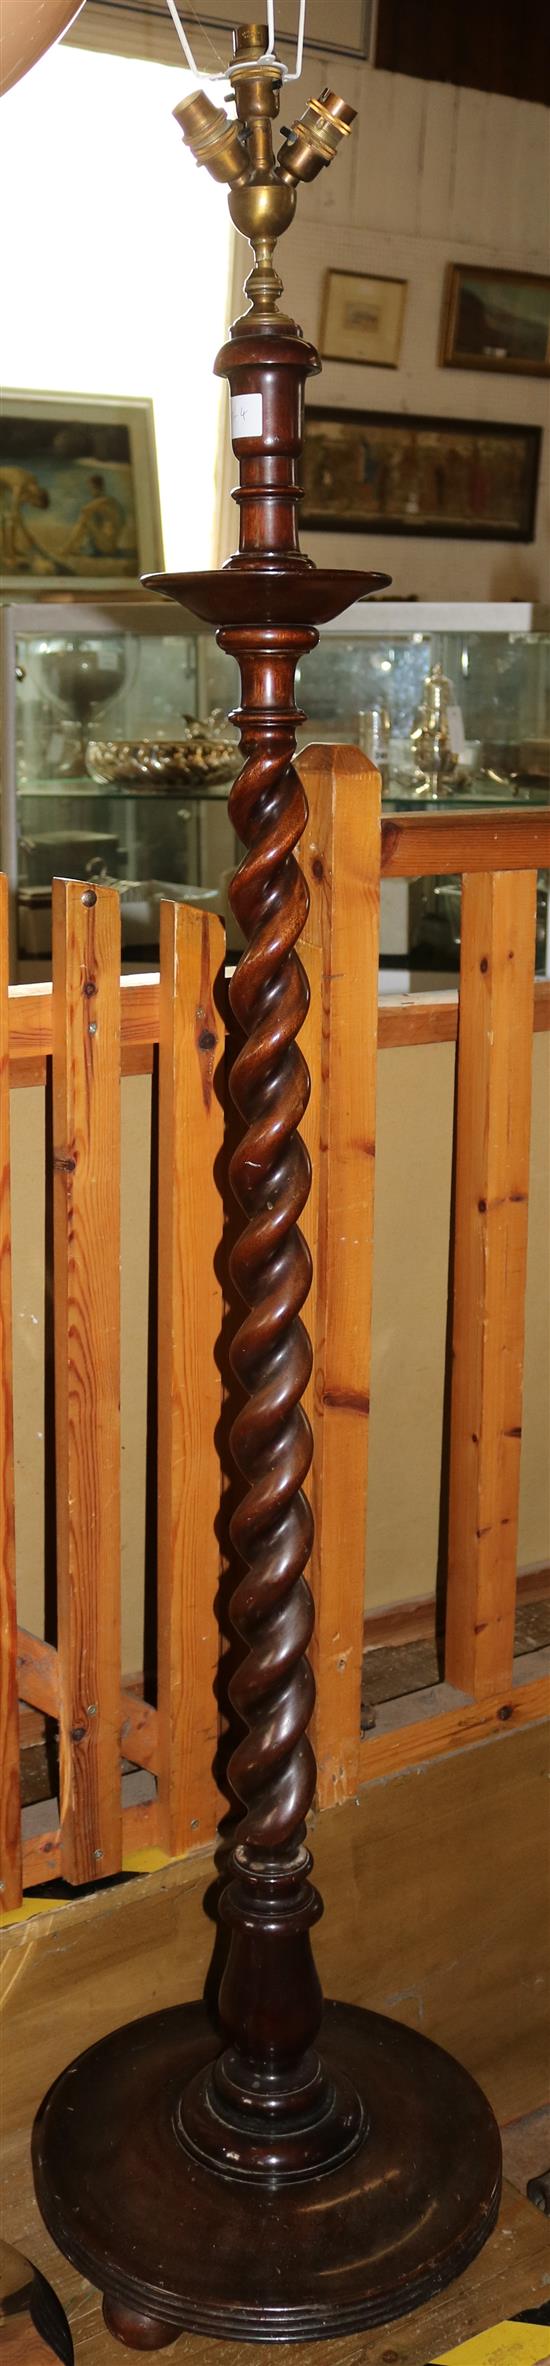 Twist column standard lamp